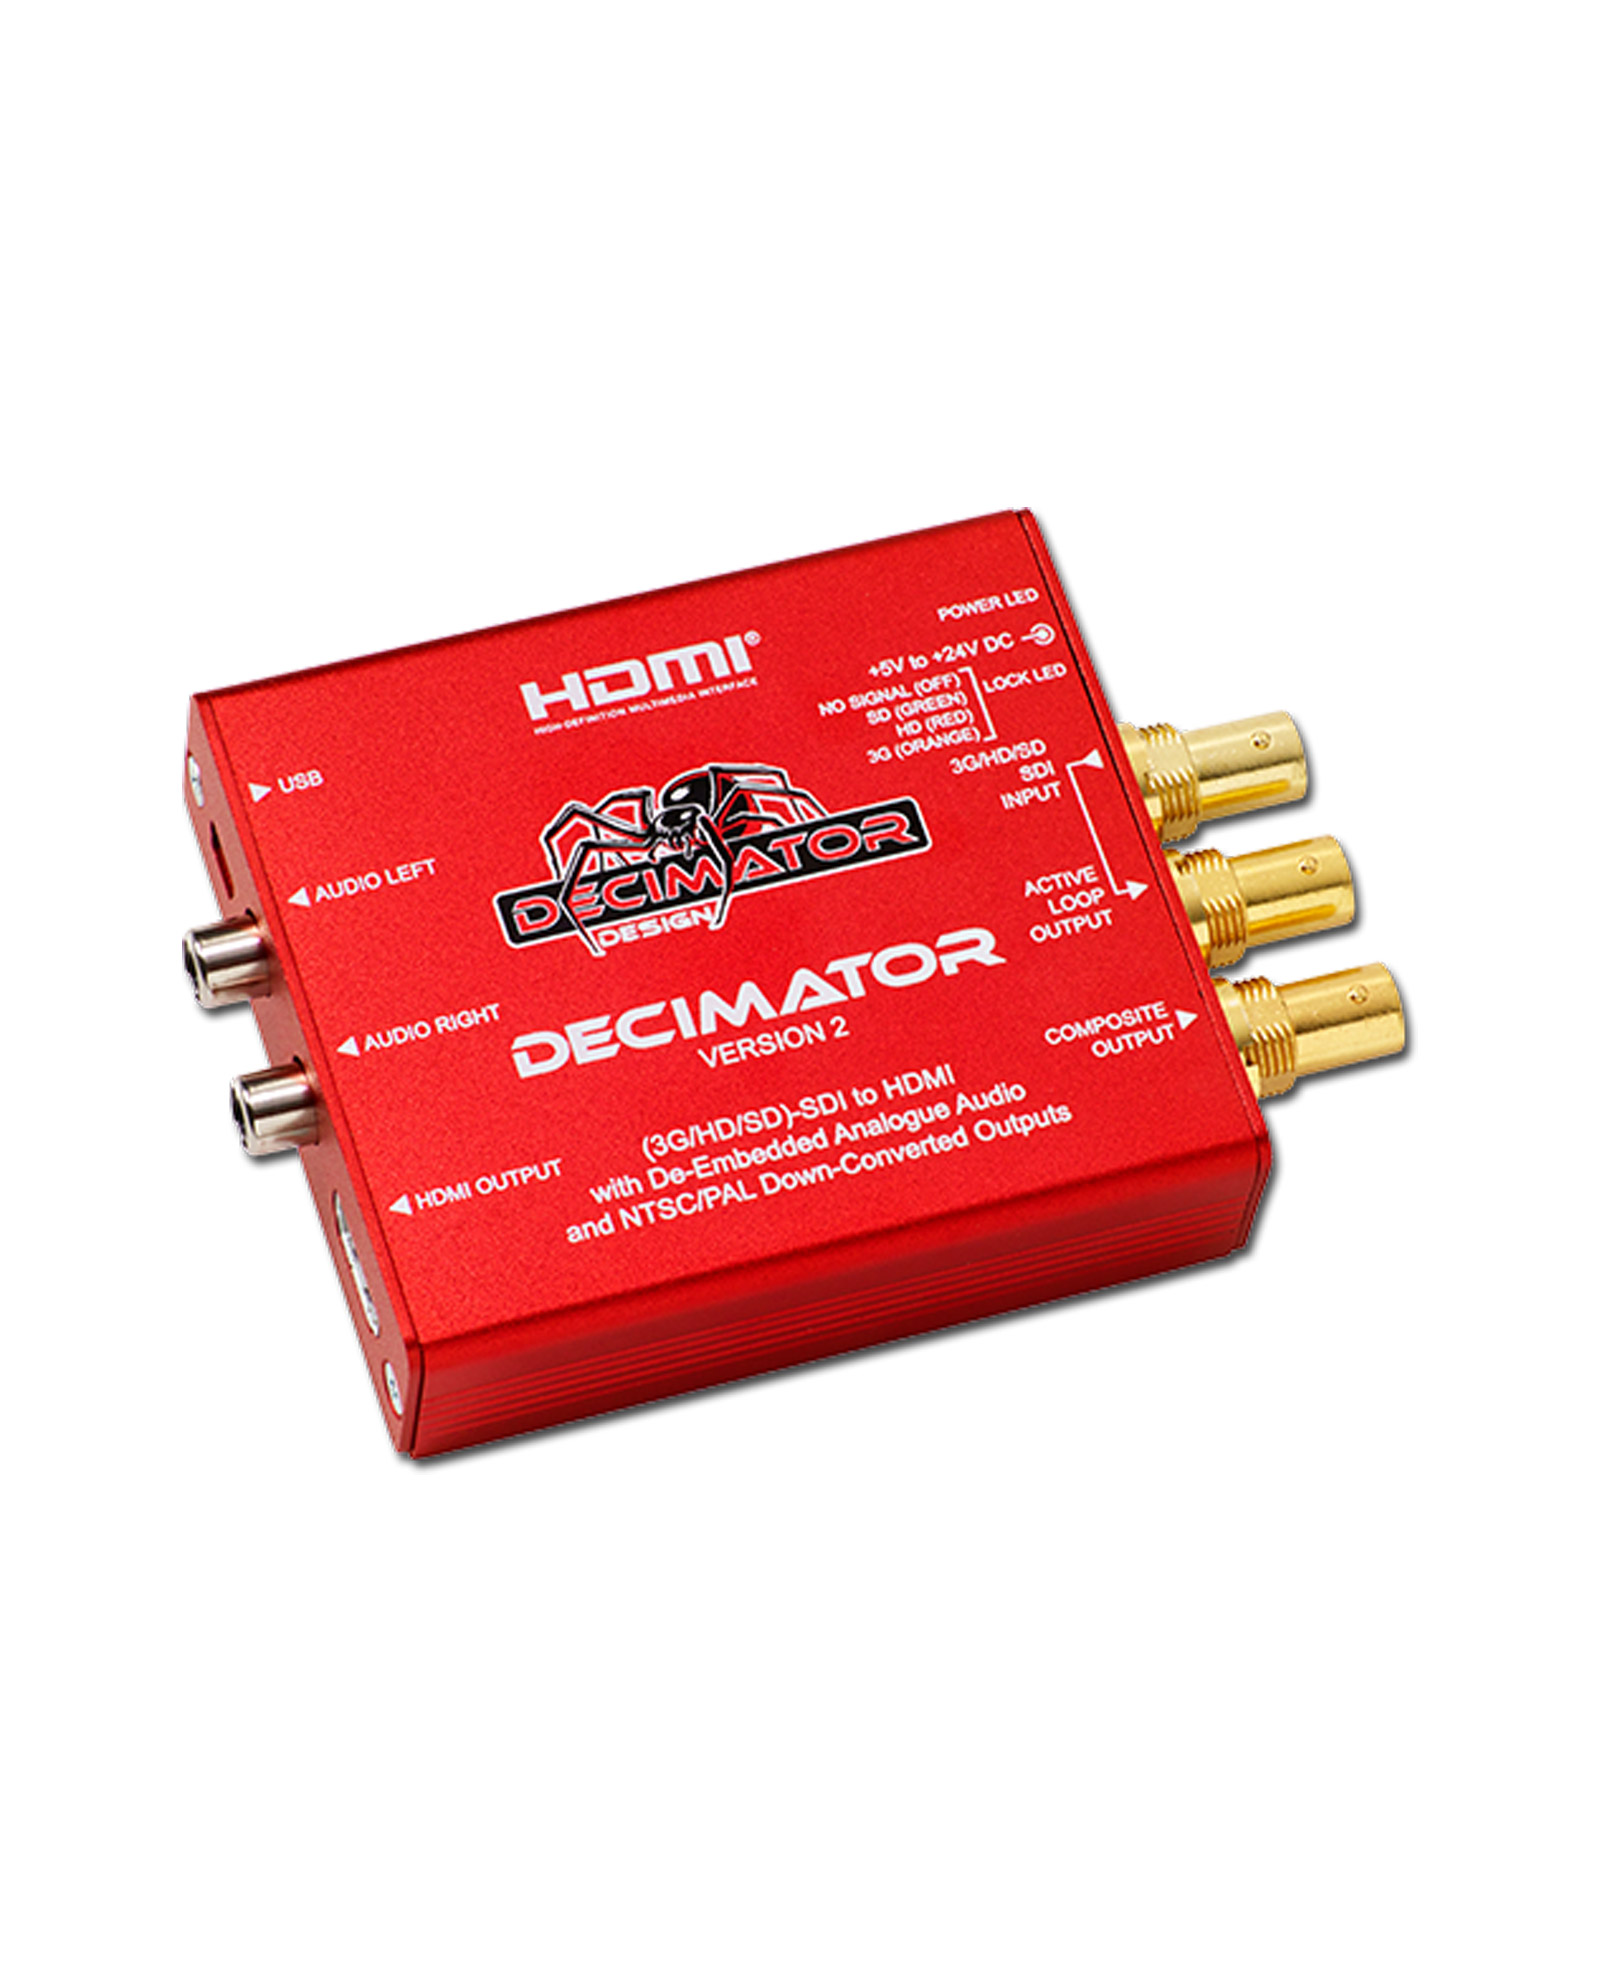 Decimator Design Decimator 2 3g Hd Sd Sdi To Hdmi With De Embedded Analogue Audio